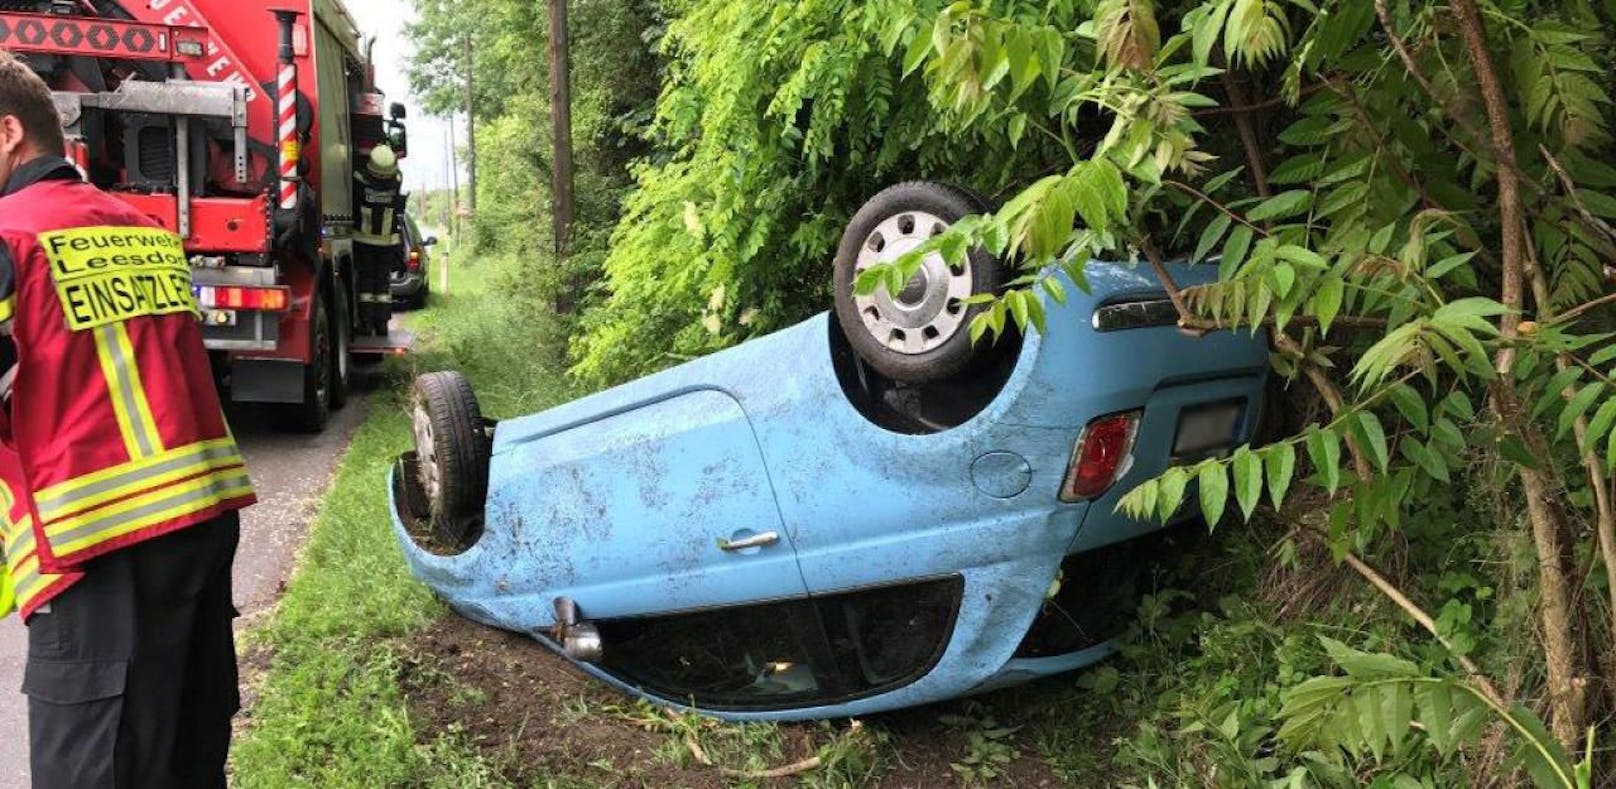 Spektakulärer Unfall: Lenkerin überschlug sich mit Auto.